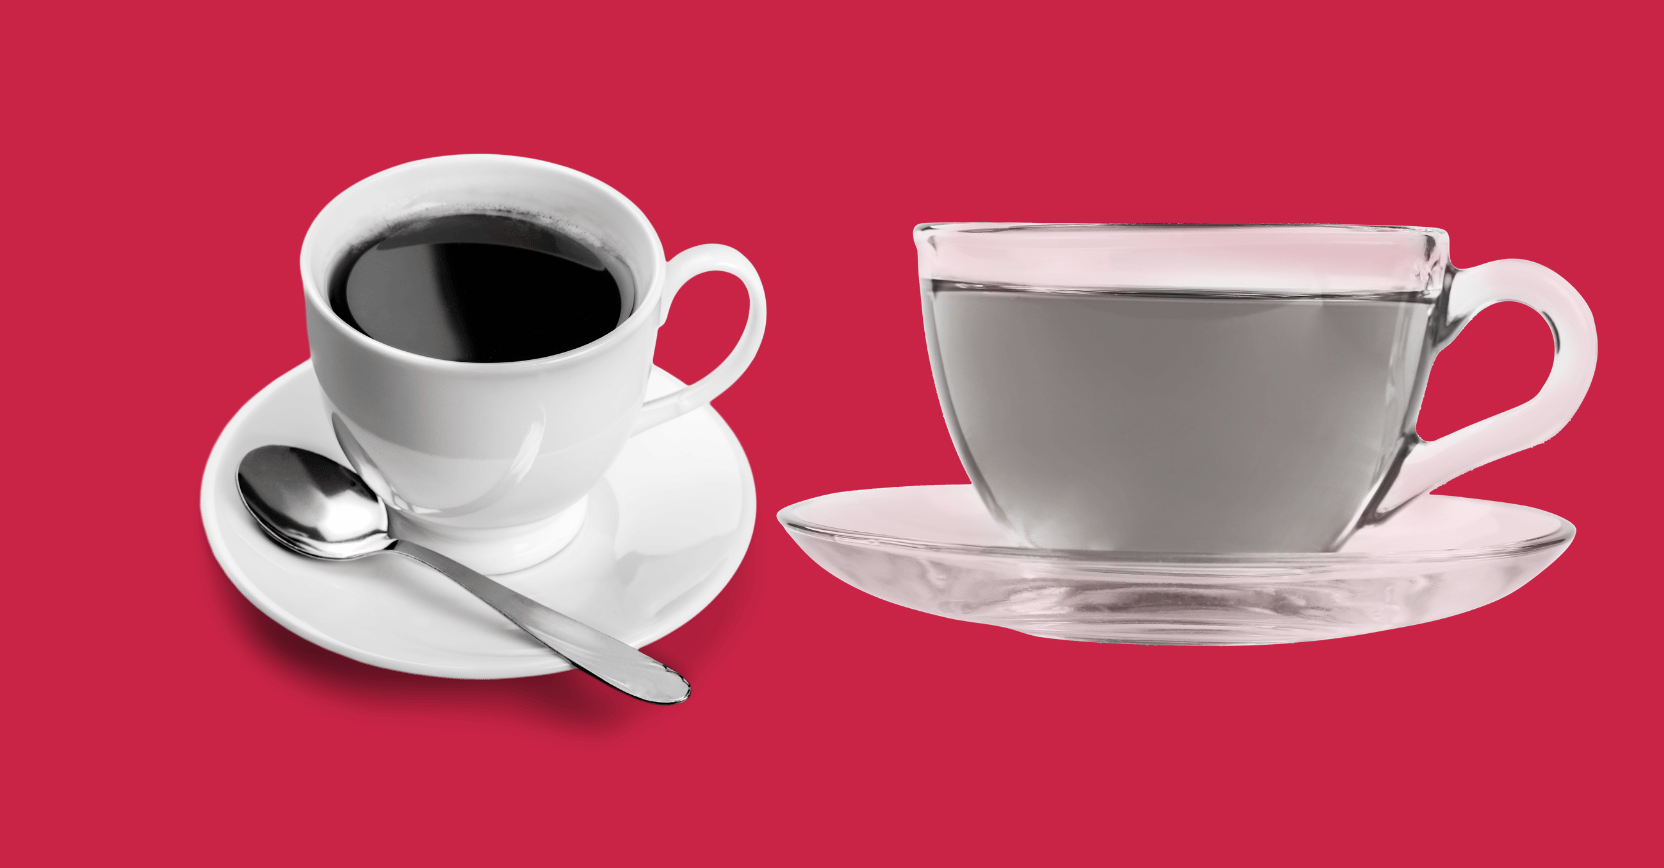 קפה נגד תה: מי מנצח בקרב על הבריאות?